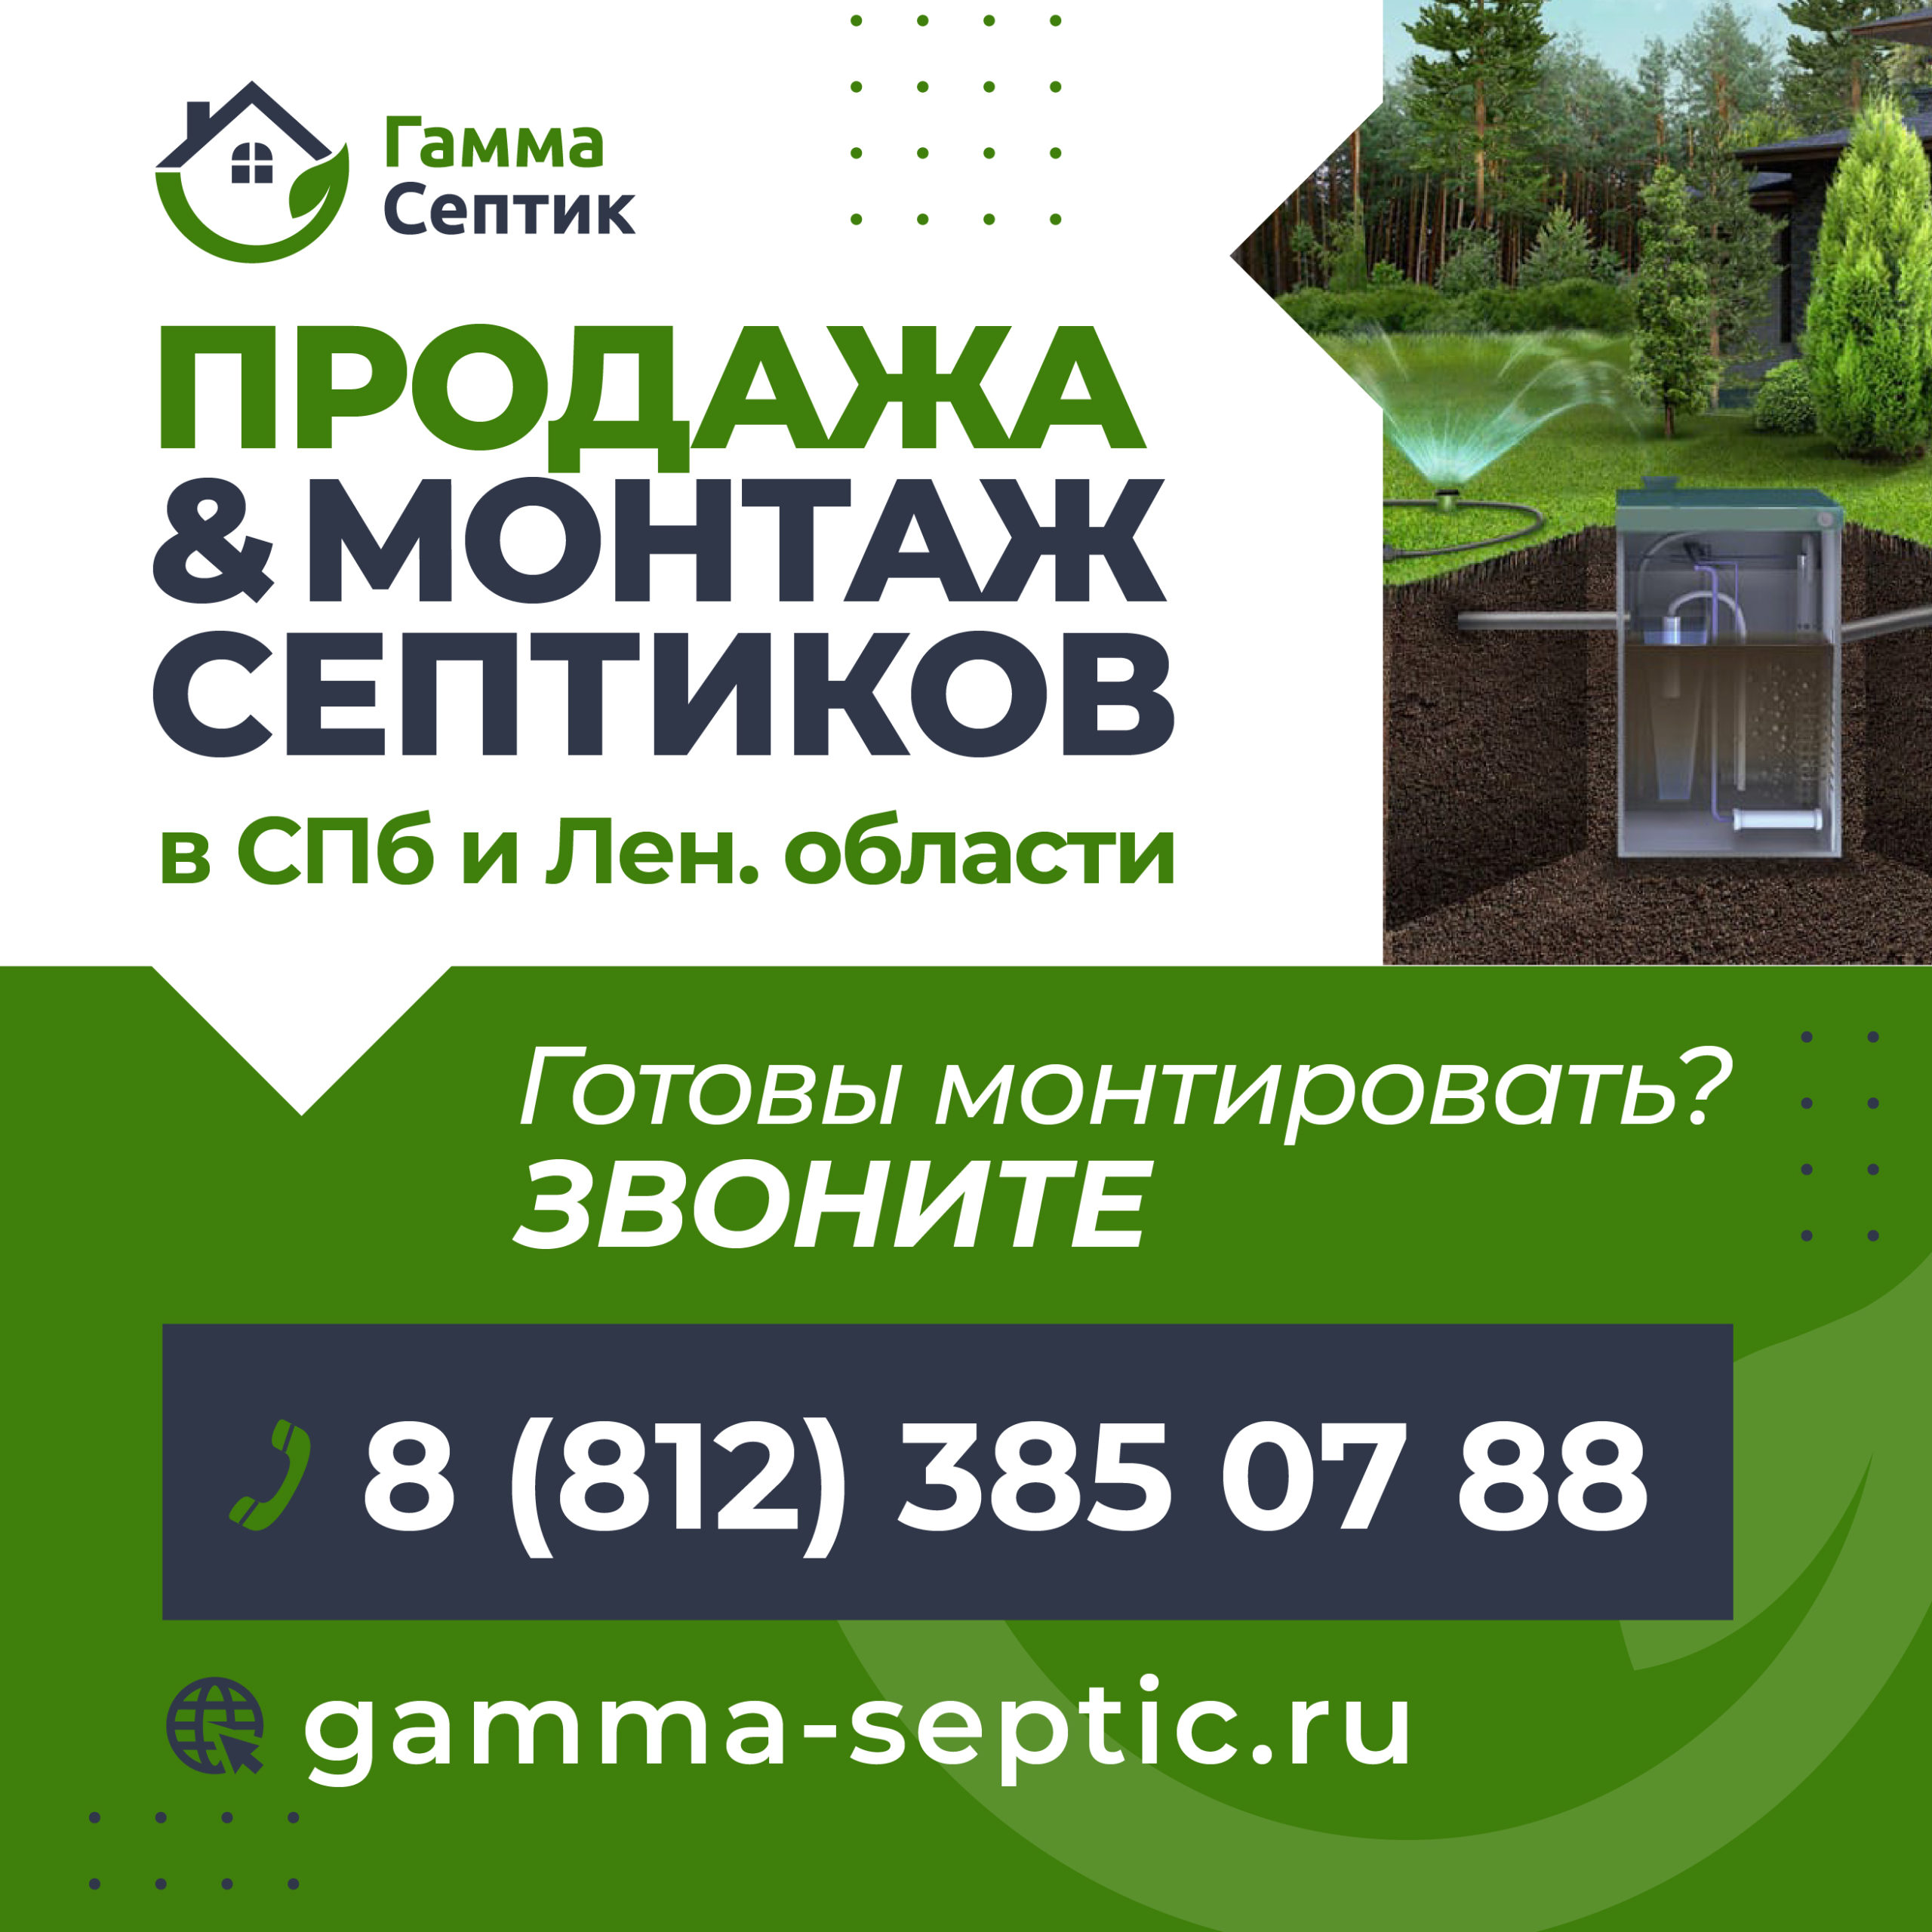 Компания Gamma Septic работает в Петербурге с 2010 года. За это время успела провести более 3000 работ по монтажу оборудования.